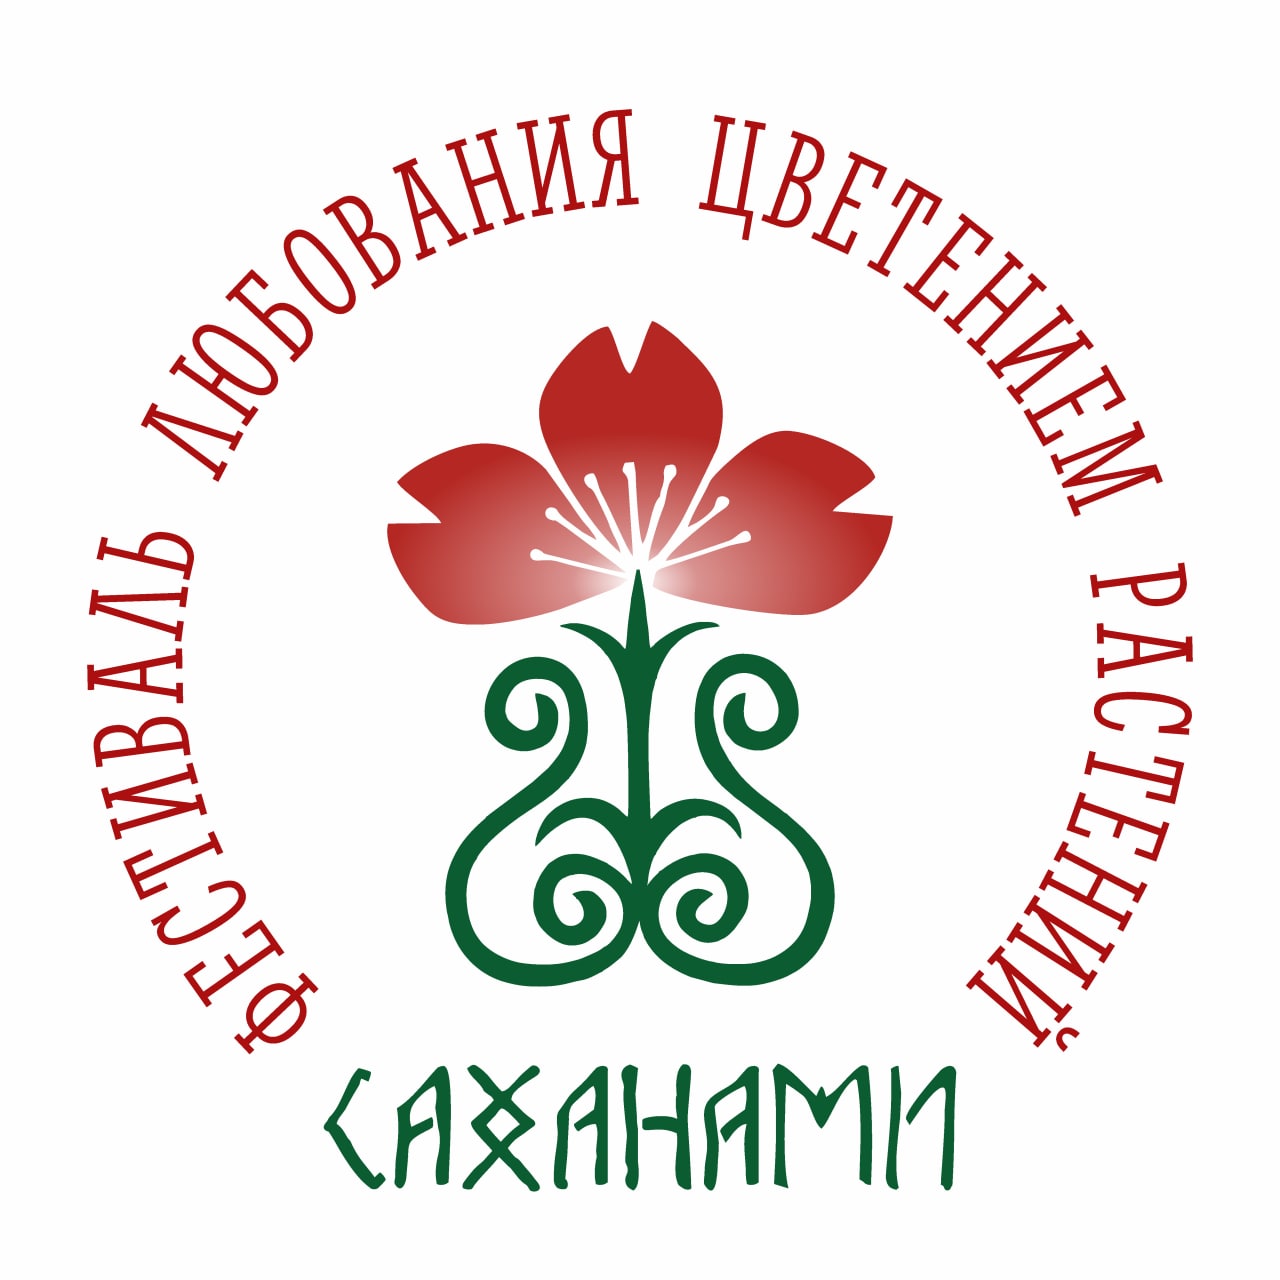 4 июня (суббота) начинается сезон "Саханами" в Ботаническом саду СВФУ!